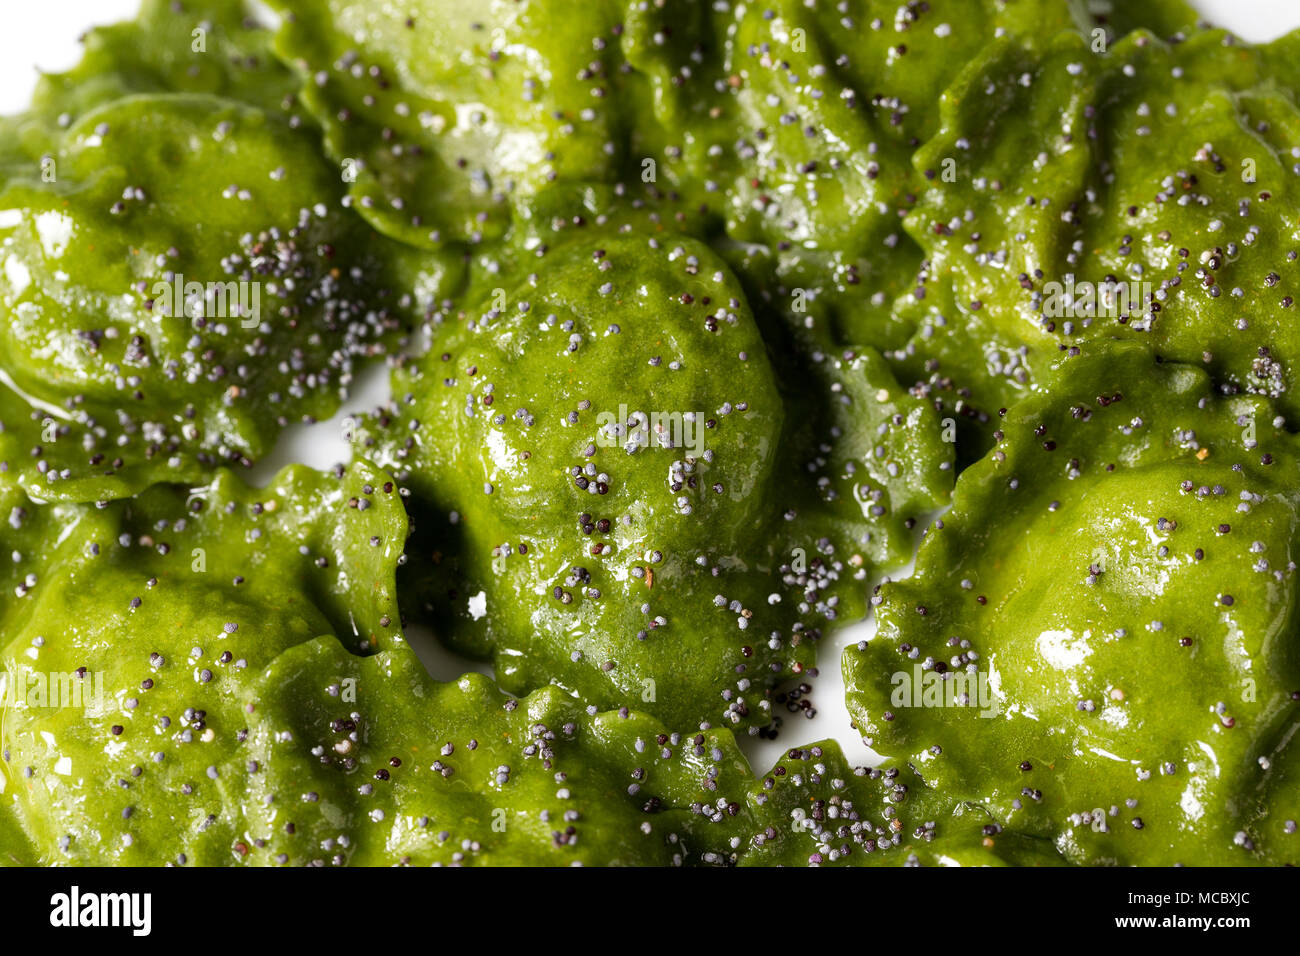 Vista dall'alto ingrandimento di una piastra di verde riempito la pasta italiana, Ravioli di spinaci con olio e semi di papavero Foto Stock